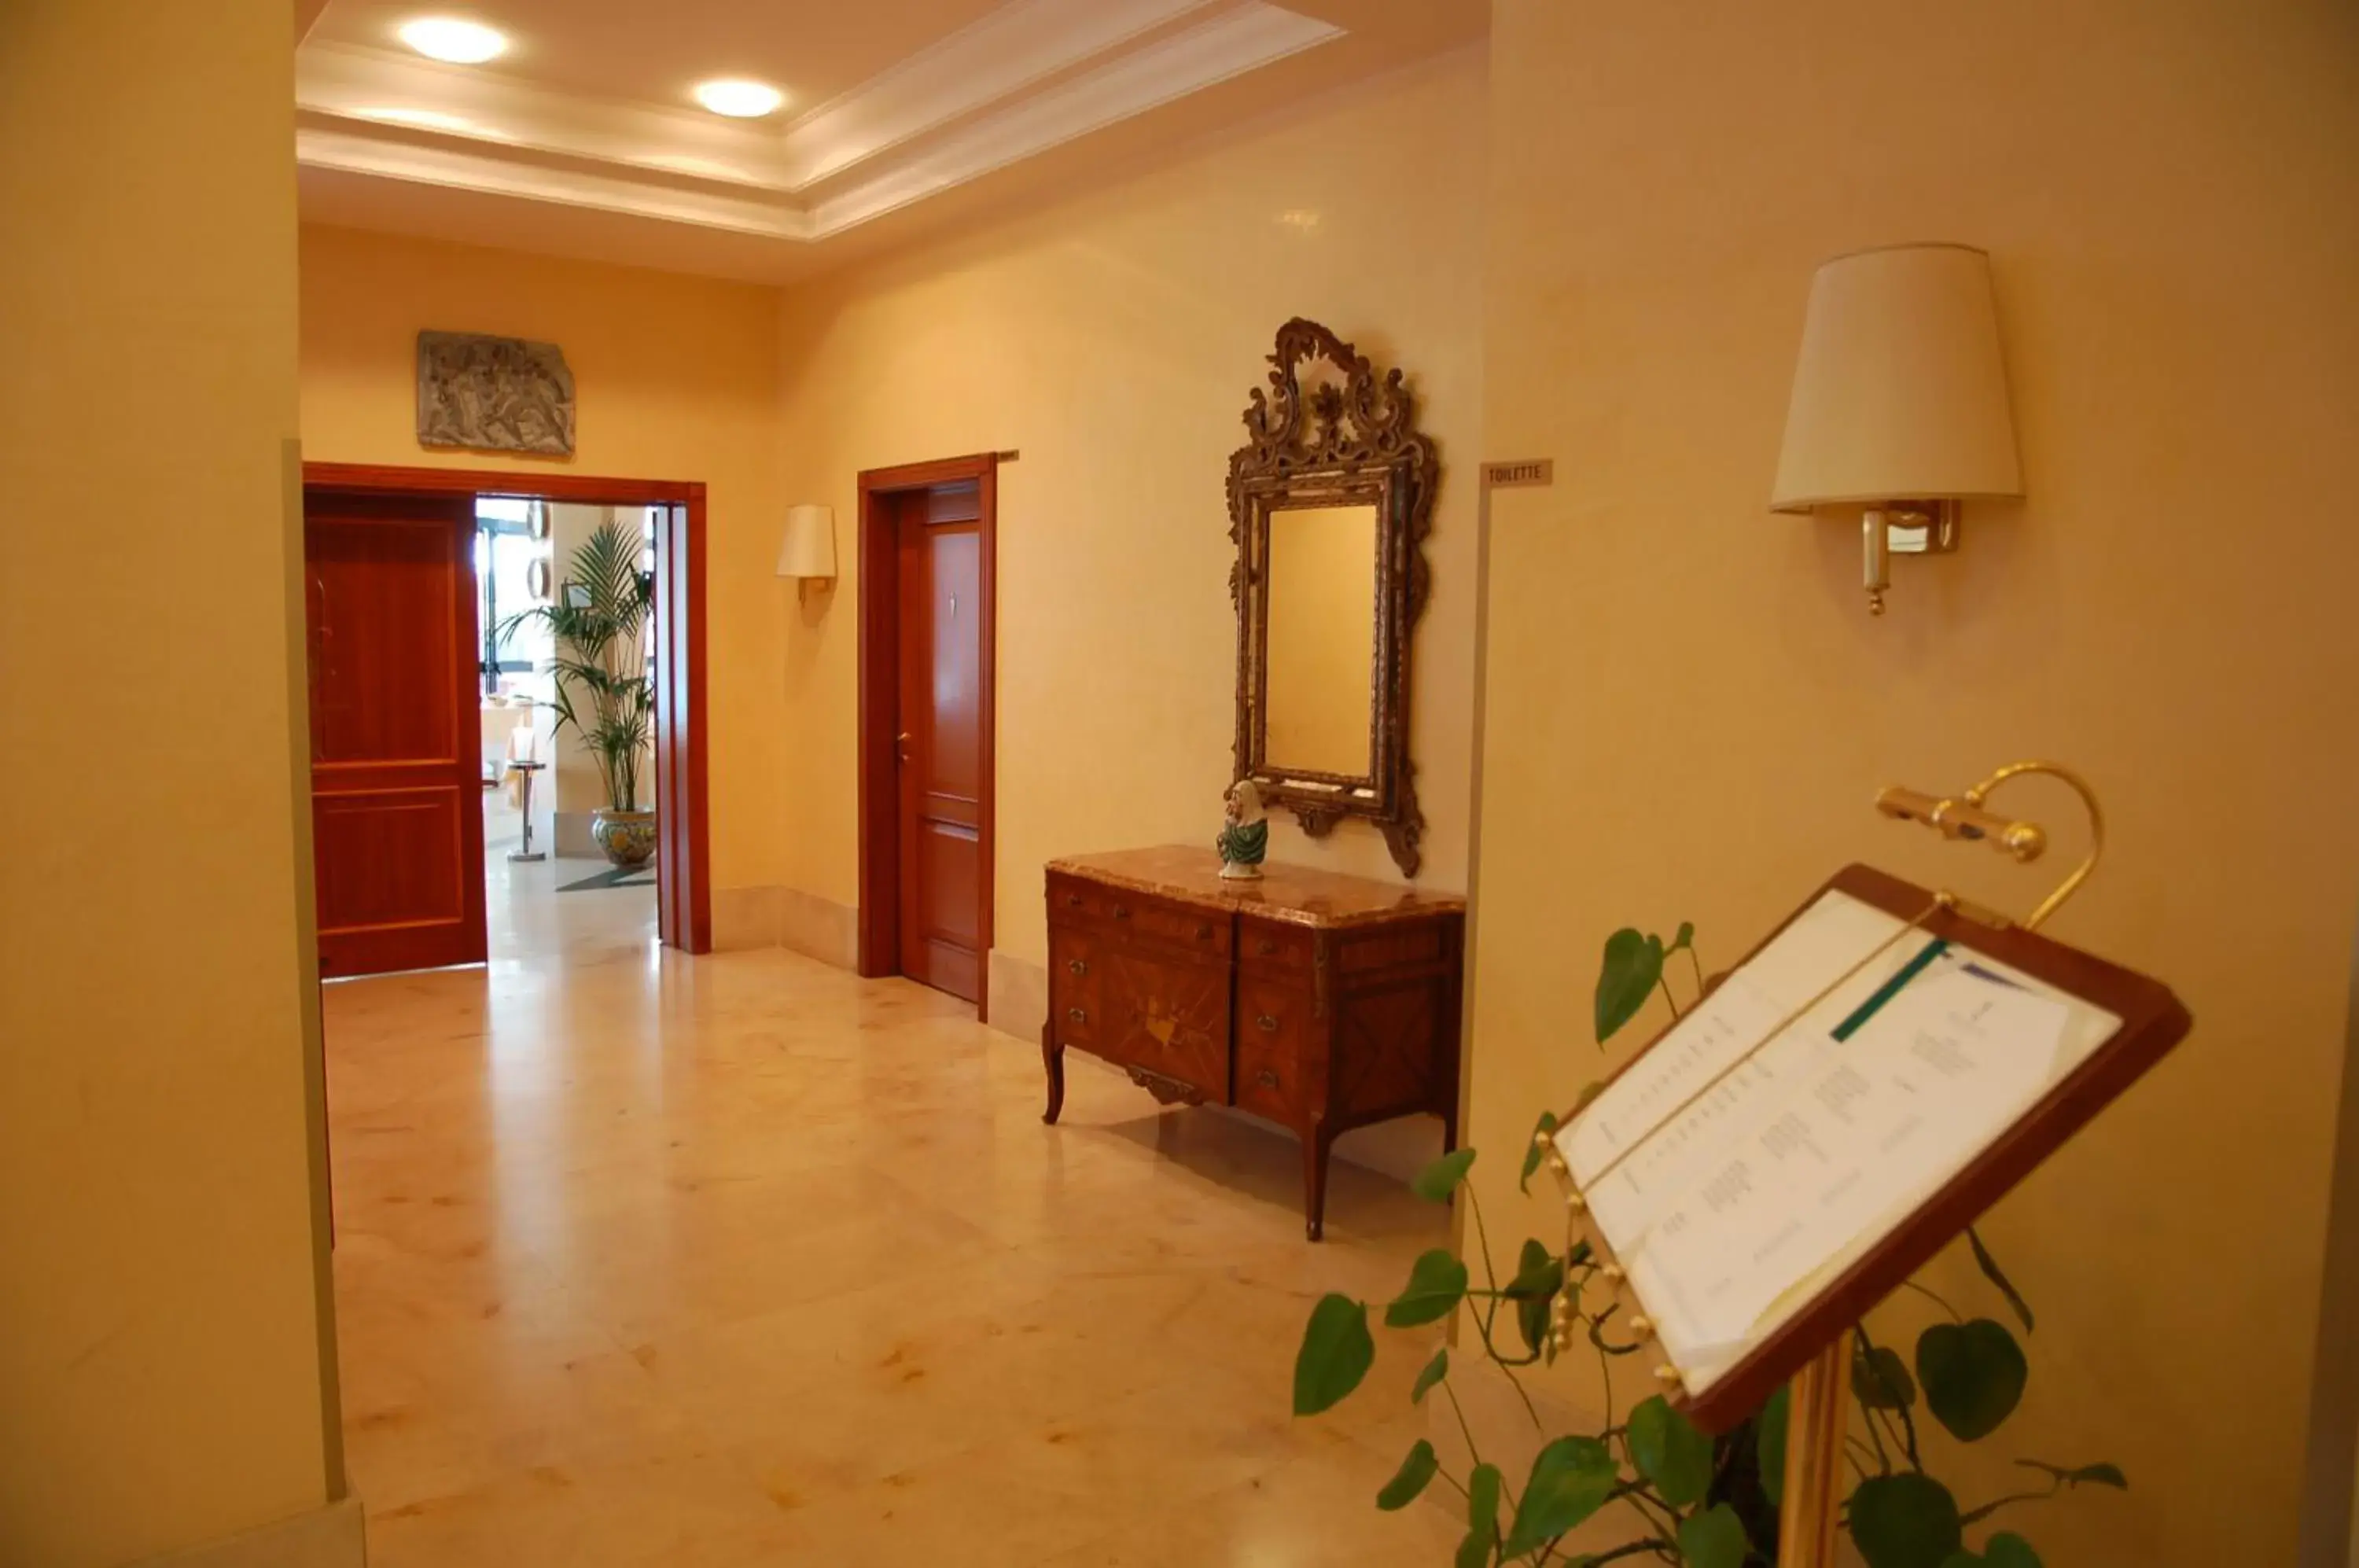 Area and facilities in Hotel Nettuno